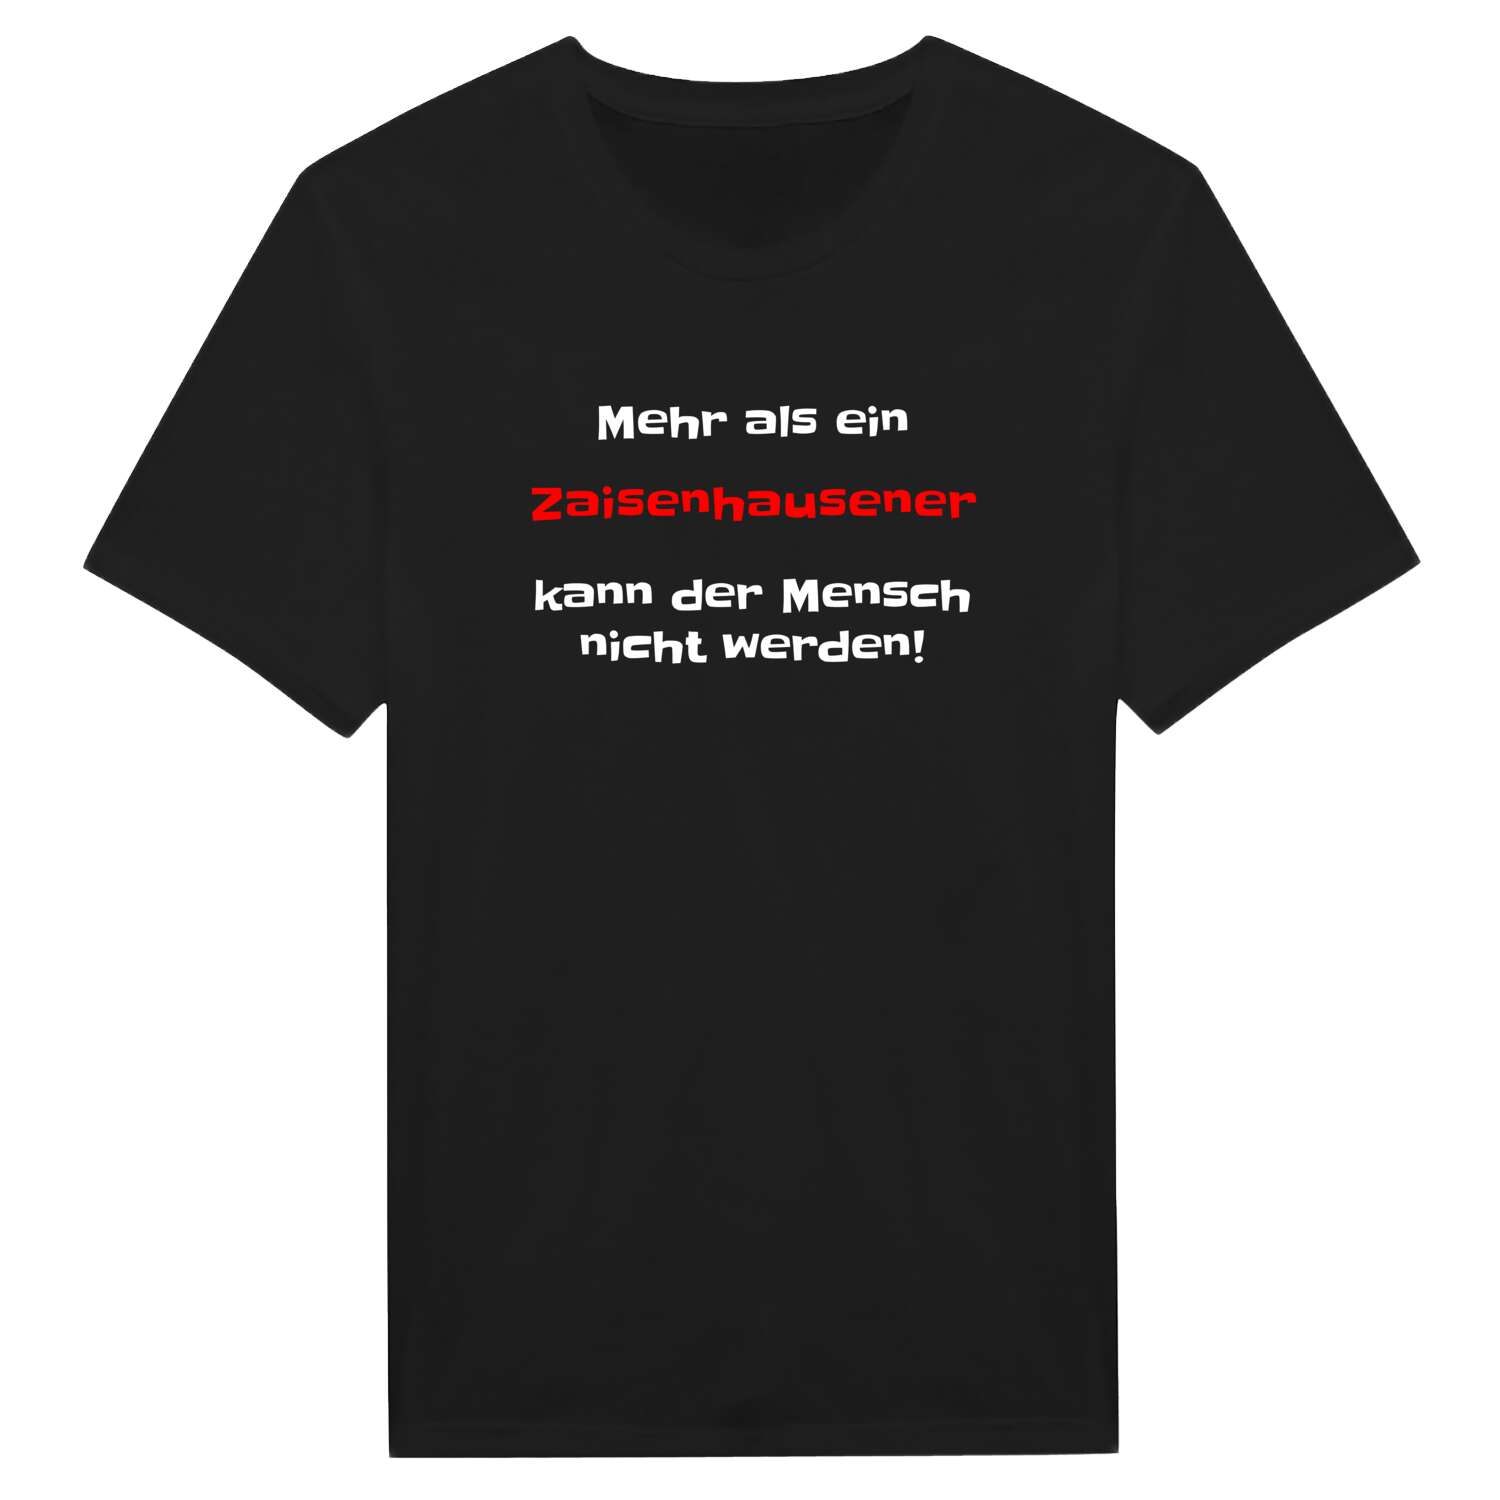 Zaisenhausen T-Shirt »Mehr als ein«